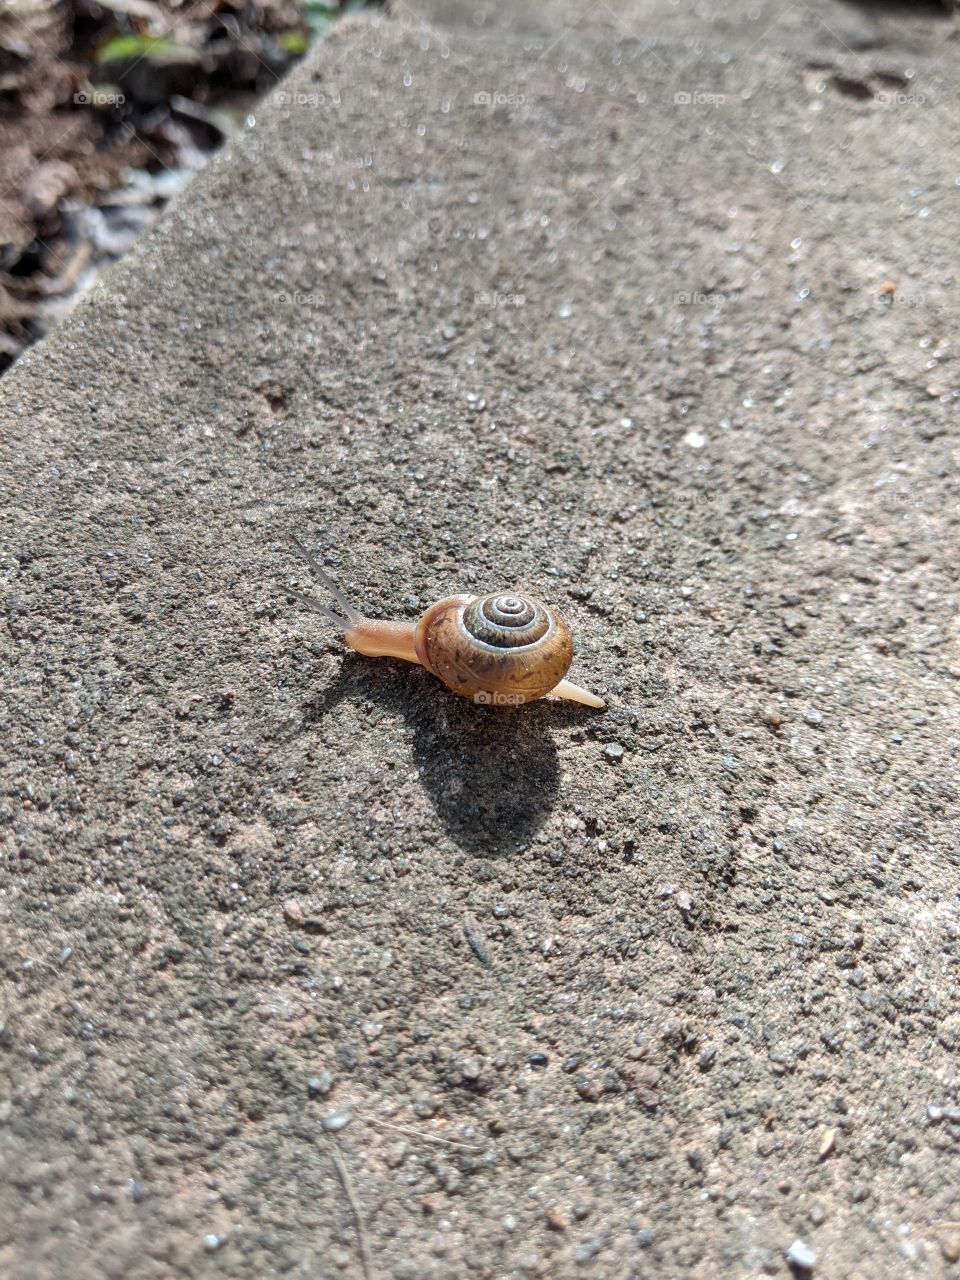 snail crossing